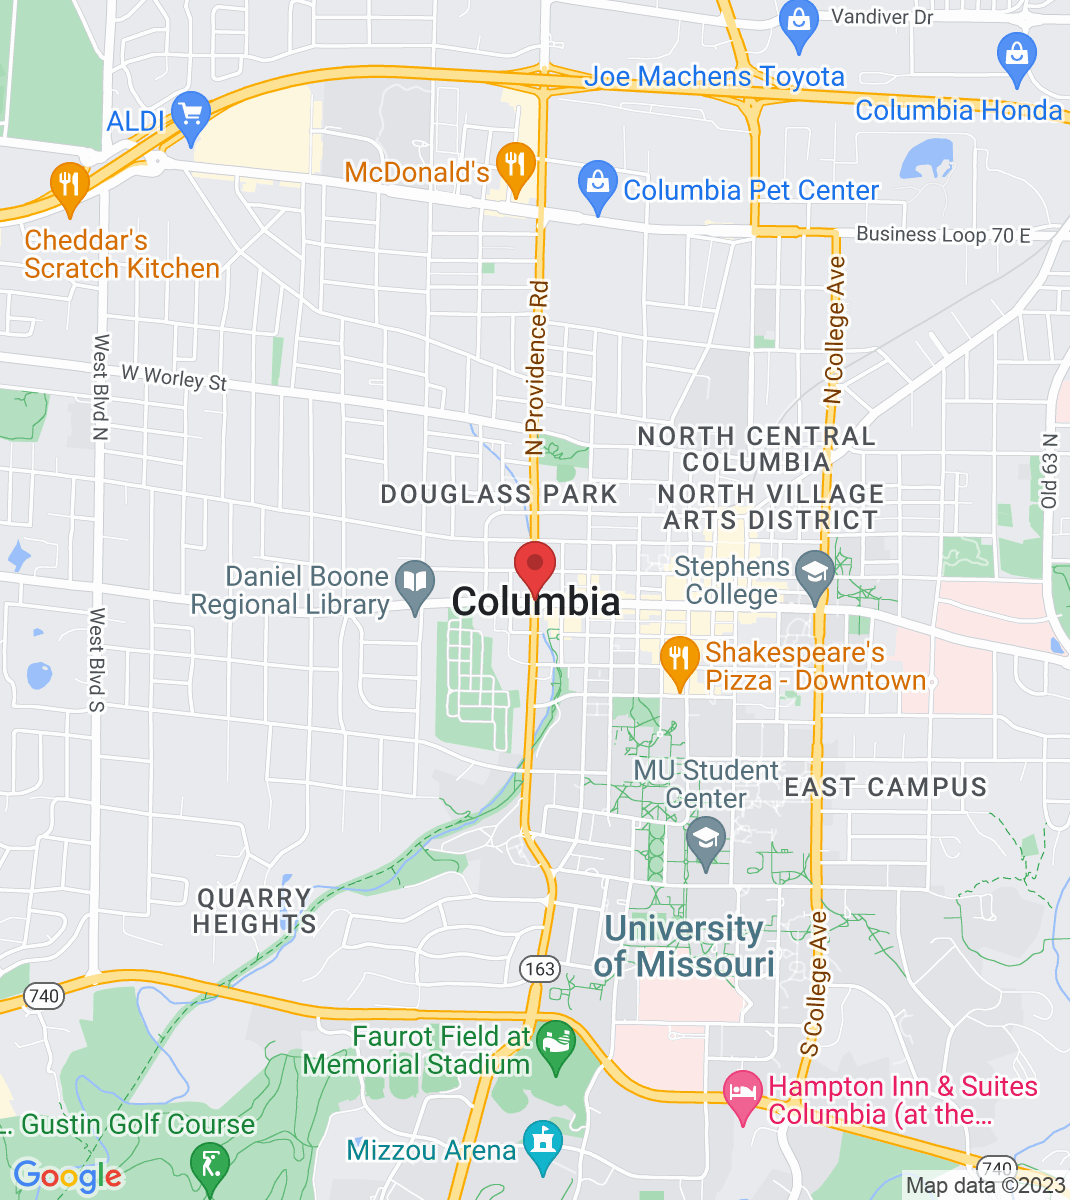 Columbia, MO, USA